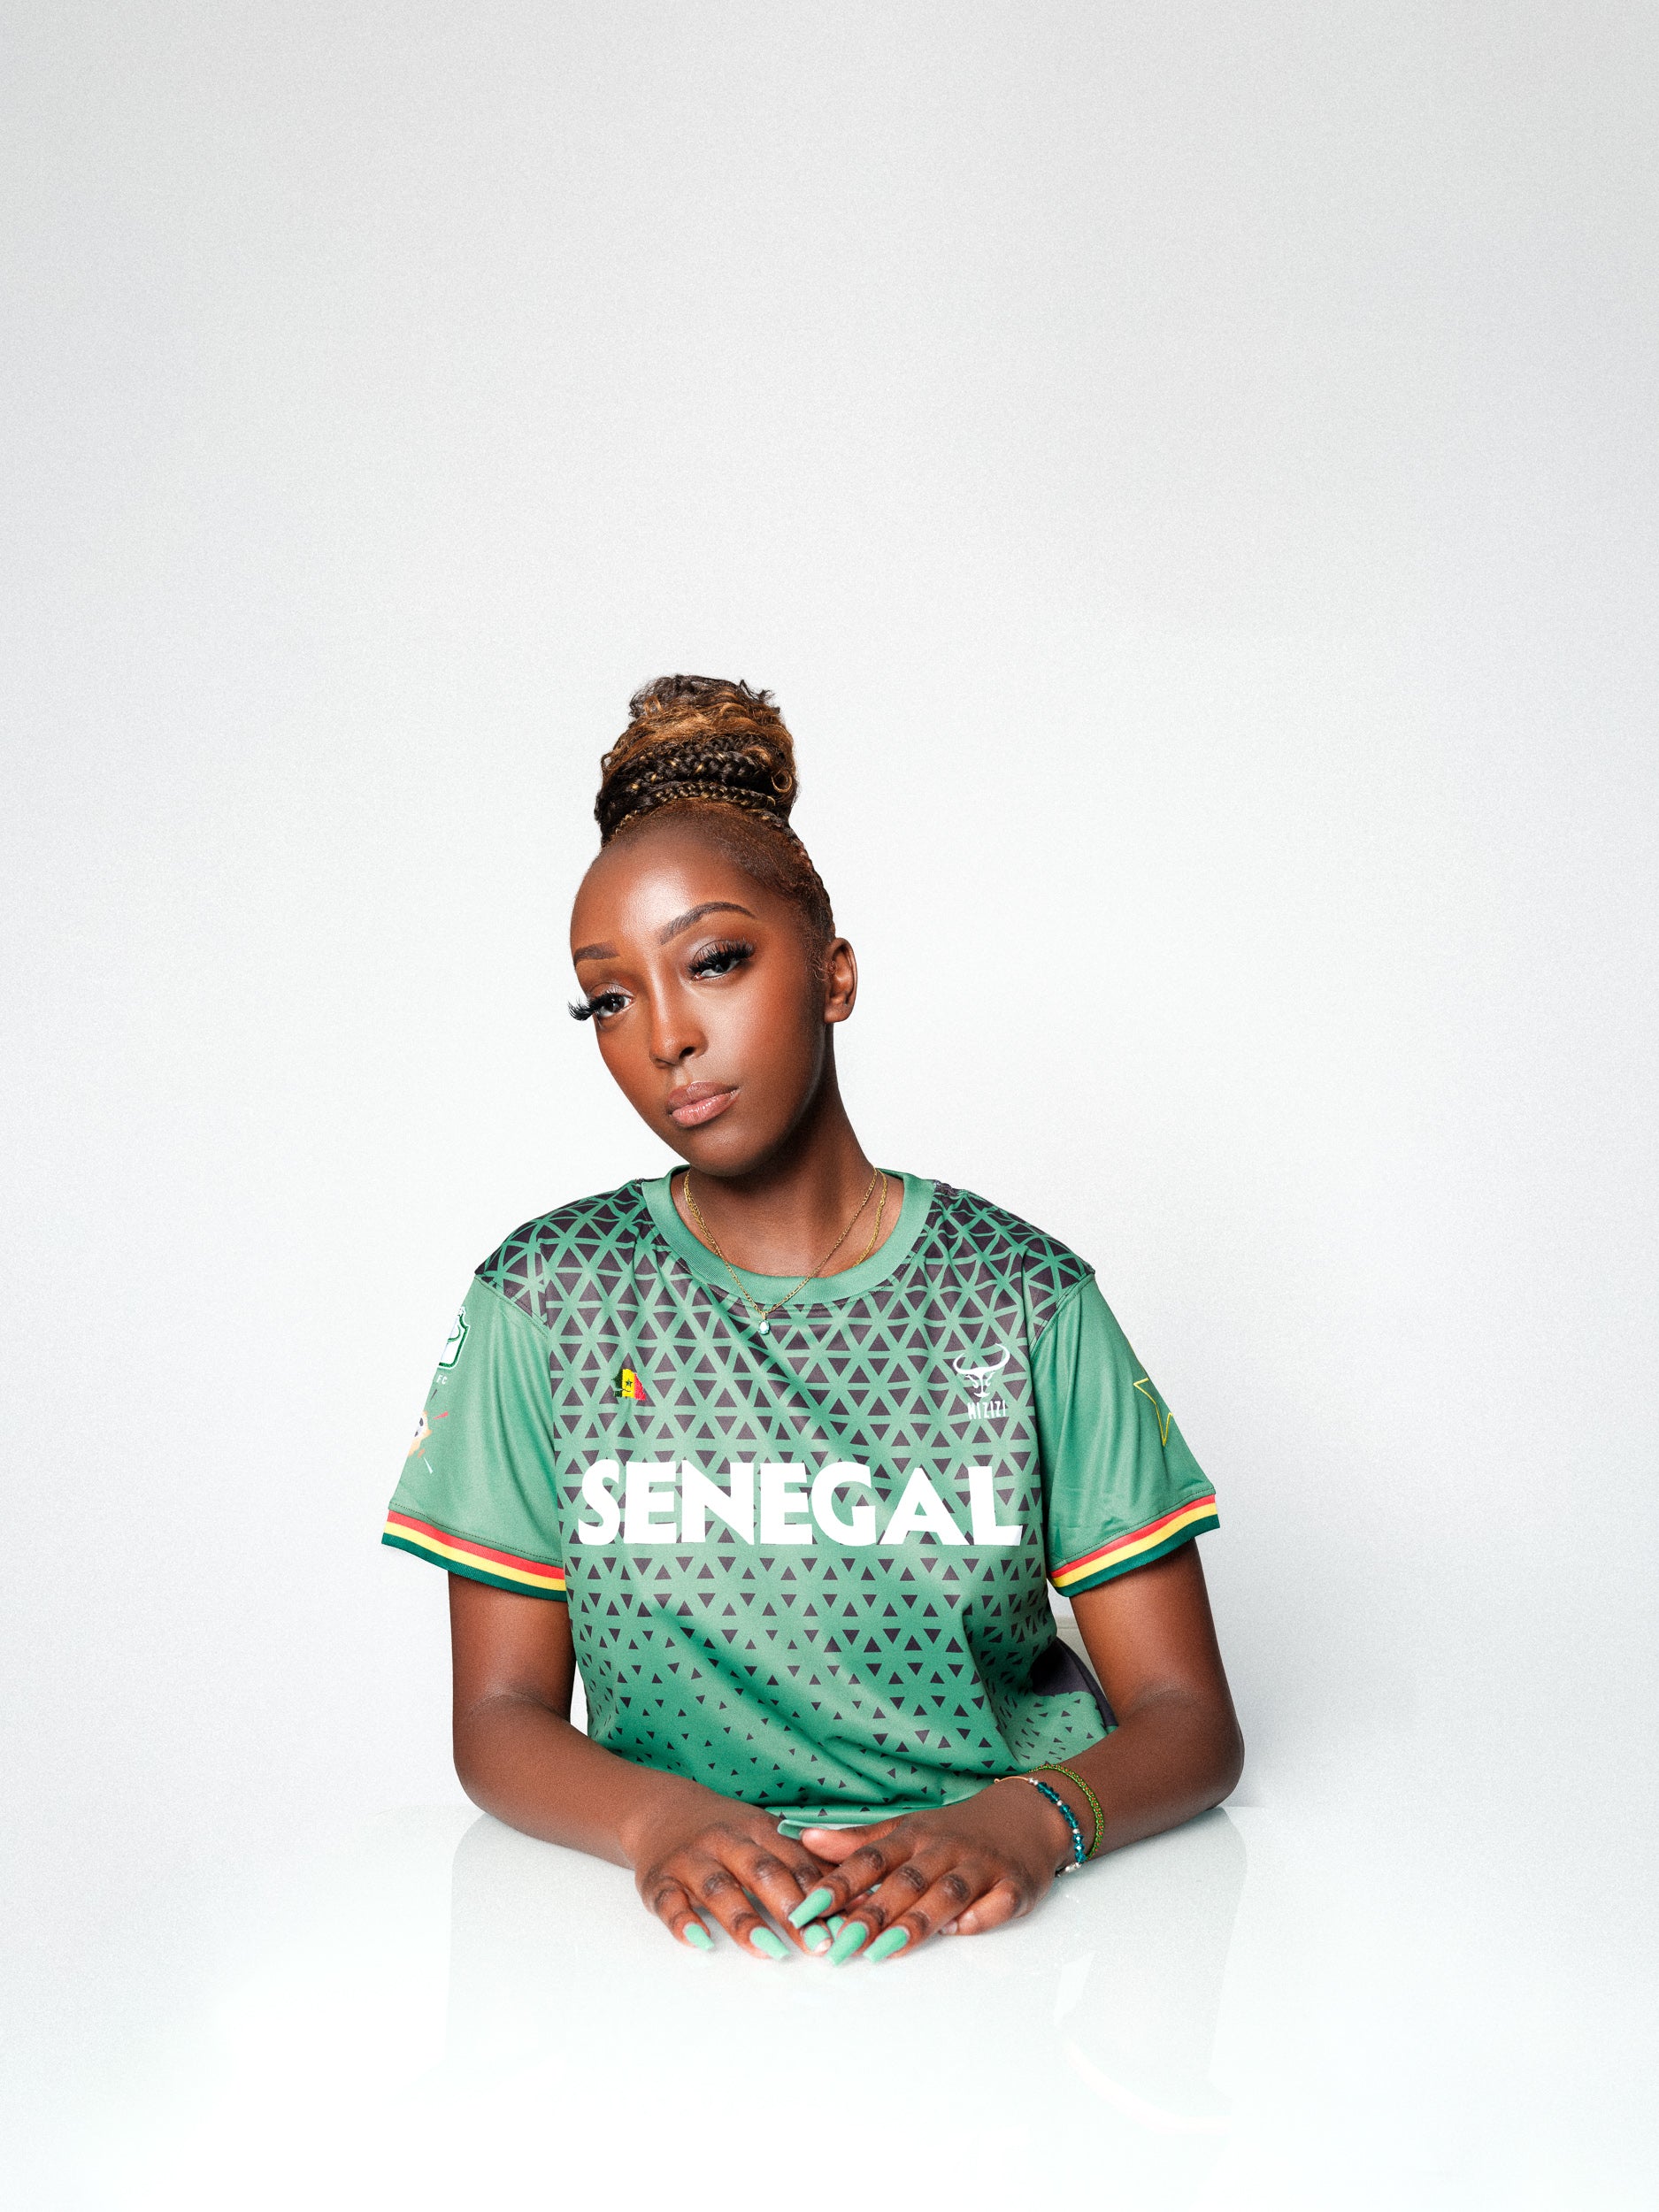 Senegal's soccer stars' jerseys